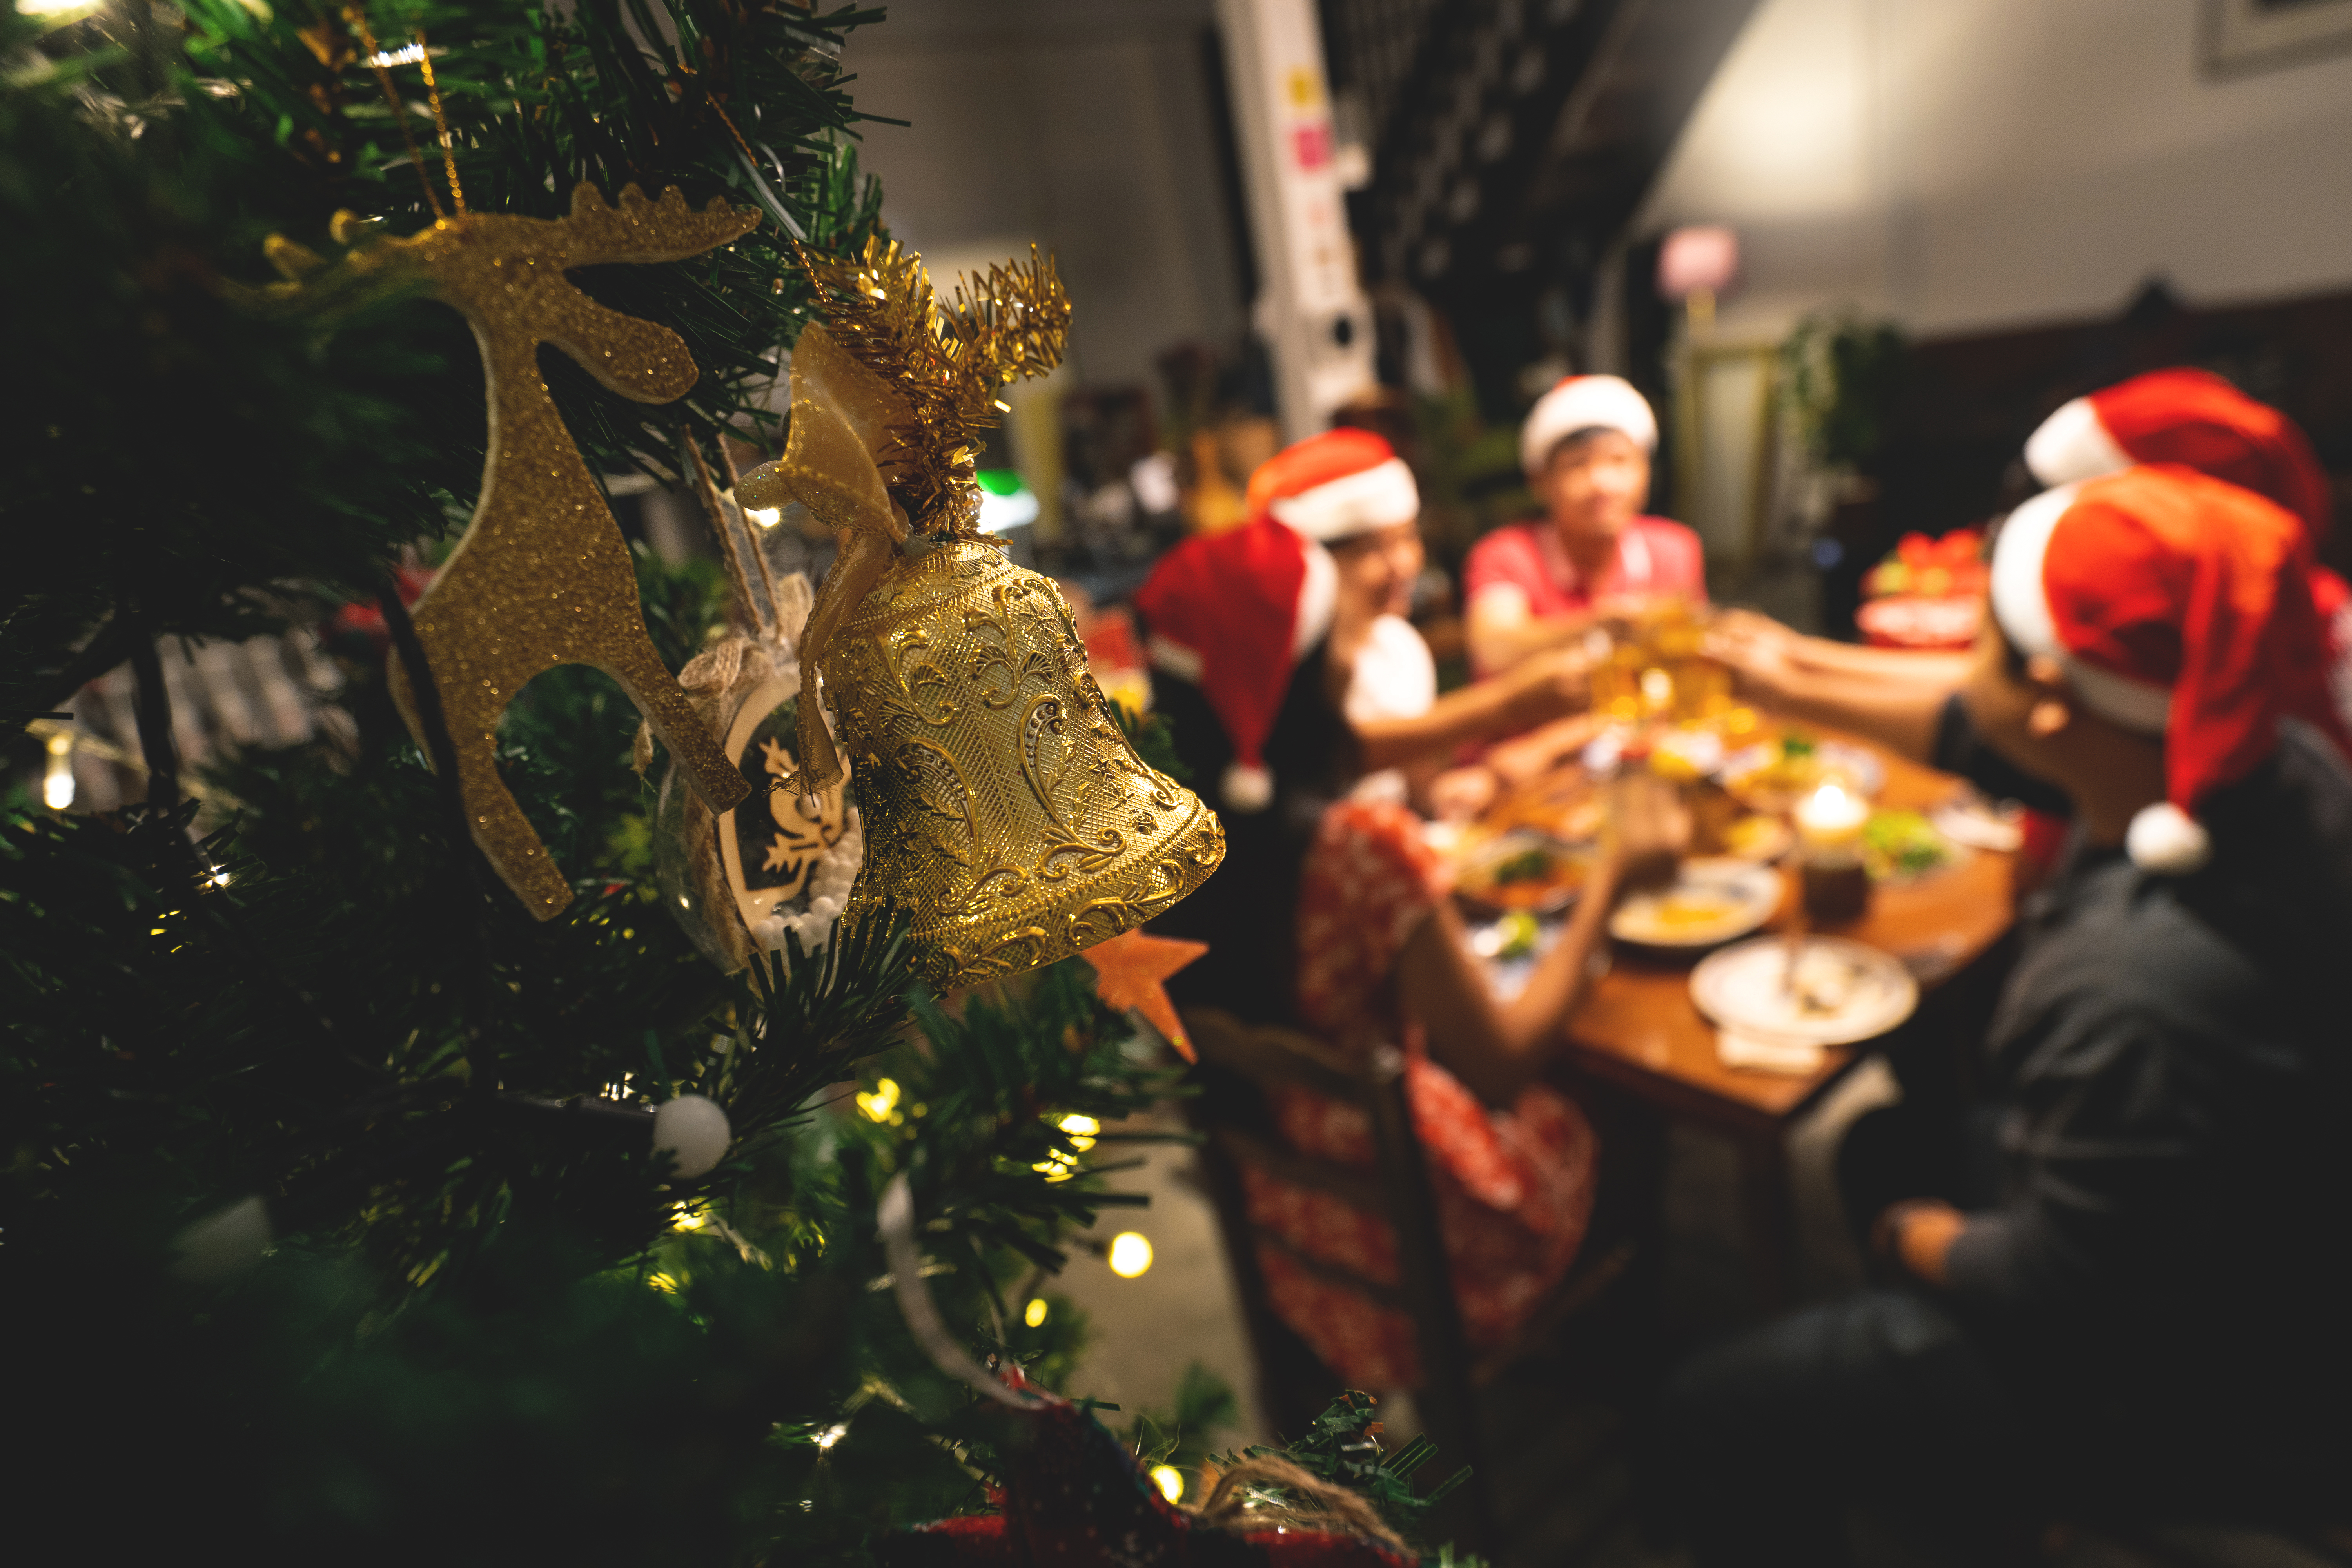 A Christmas dinner | Source: Shutterstock